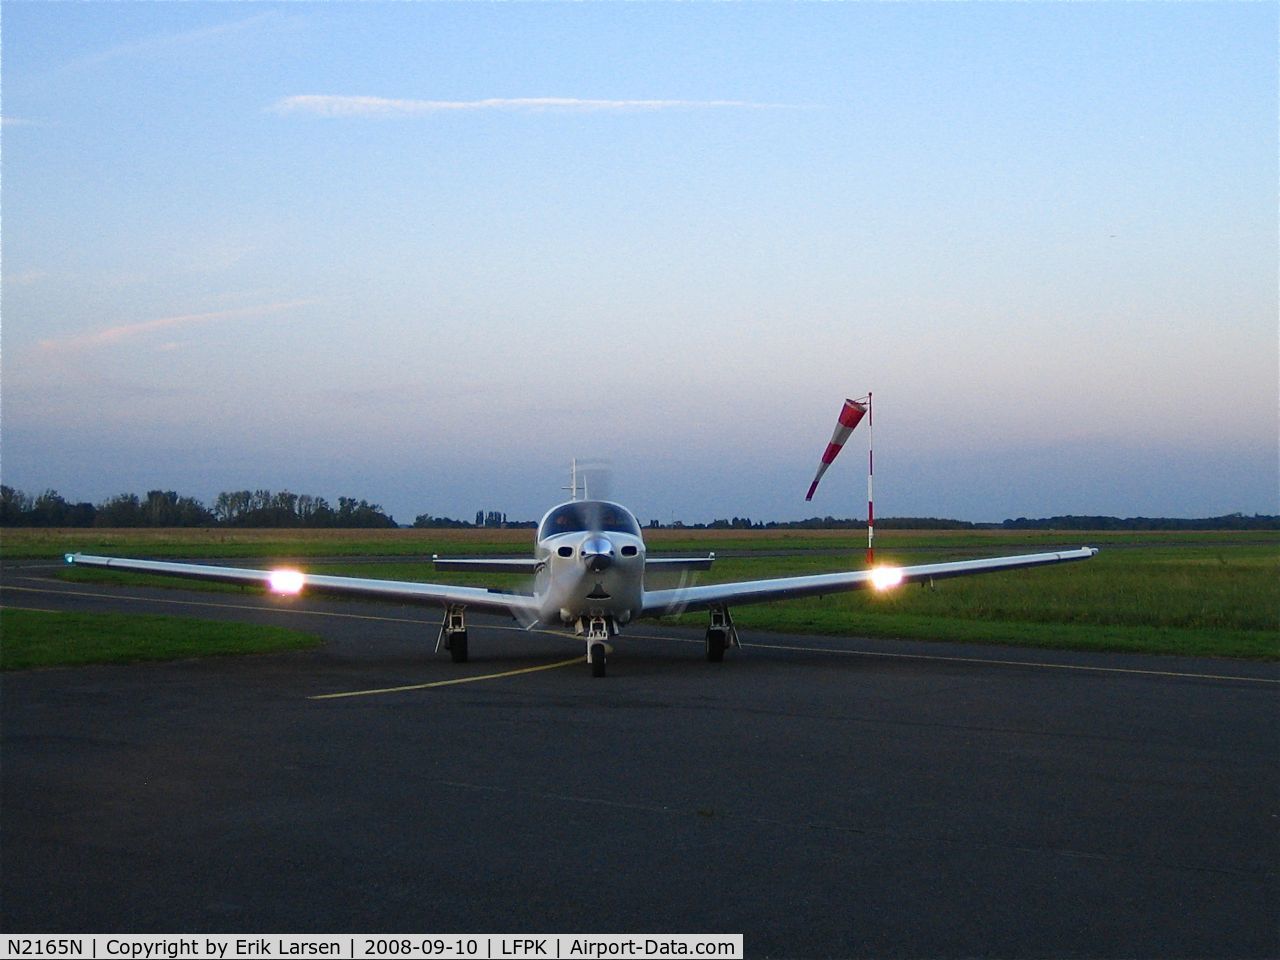 N2165N, 1999 Mooney M20S Eagle C/N 30-0007, Dawn landing at Coulommiers